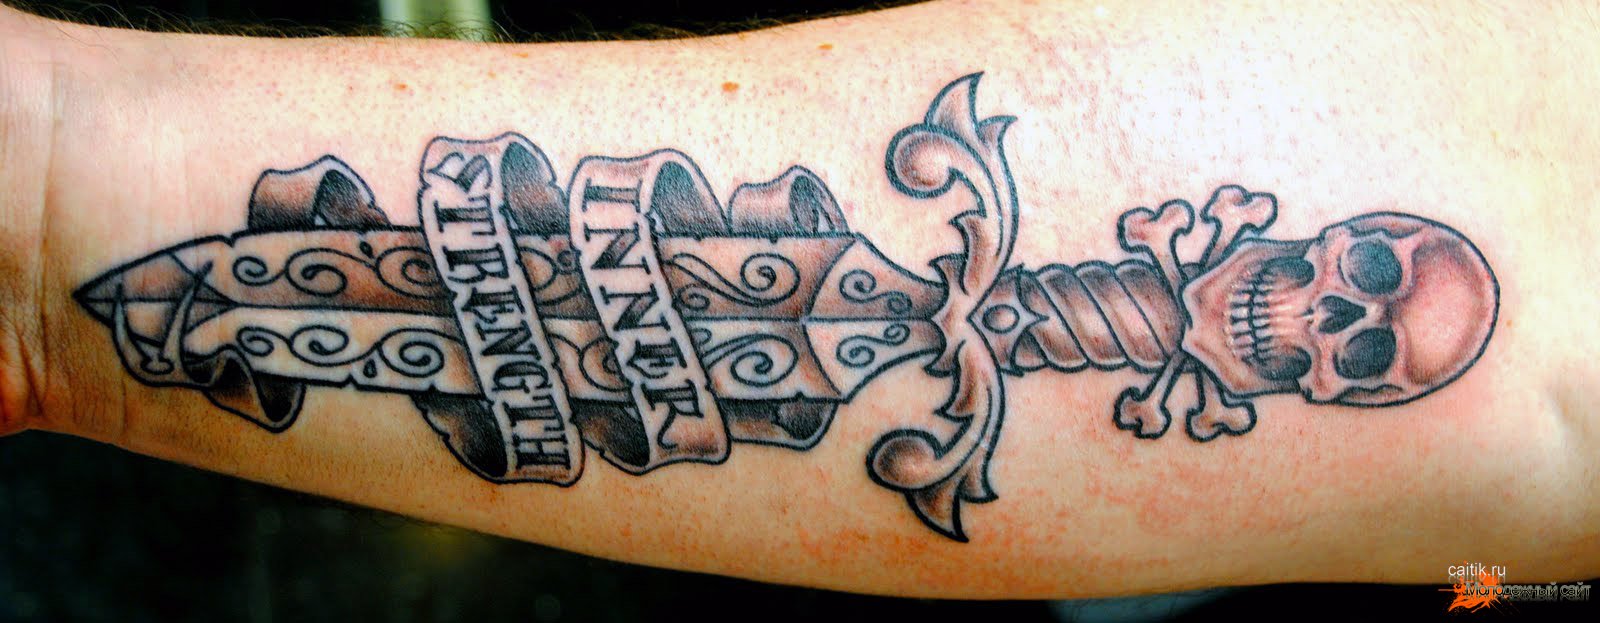 Татуировки с кинжалом - символ силы и мужества